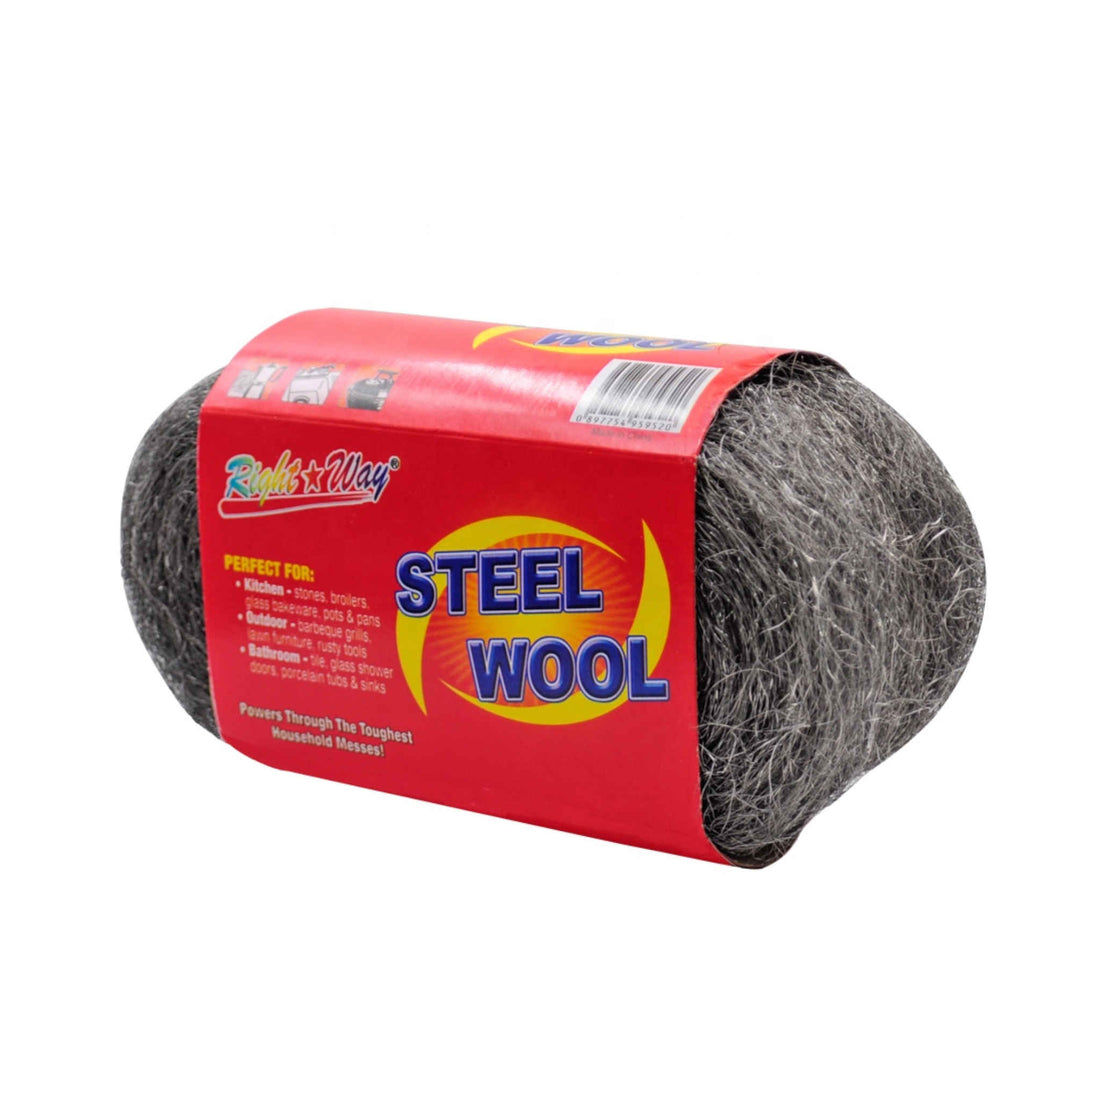 Steel Wool Scourer